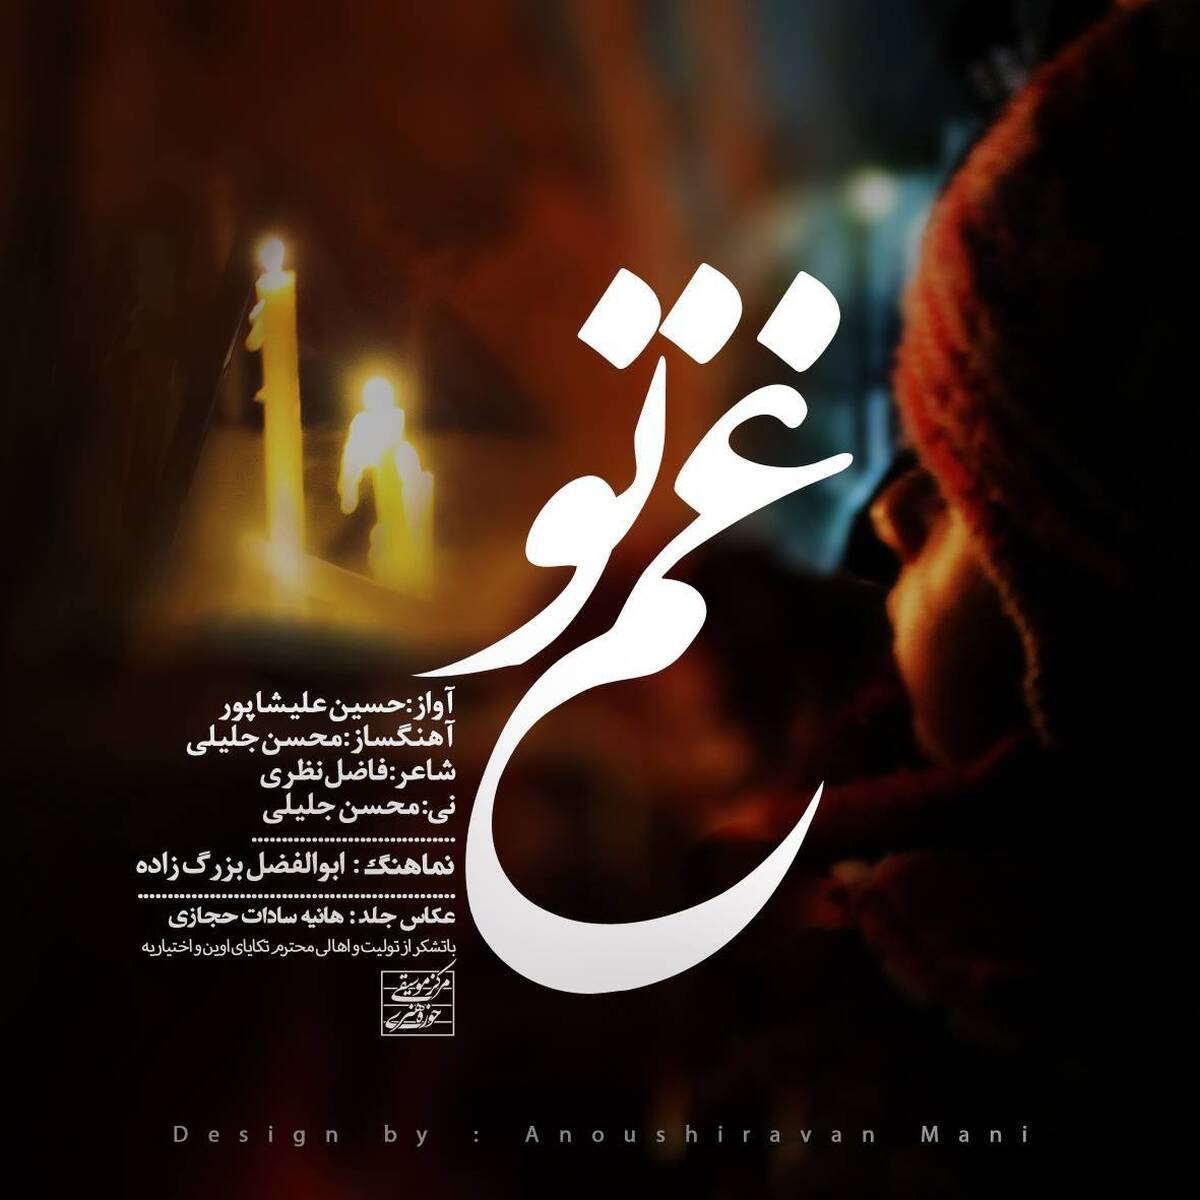 انتشار قطعه جدید «غم تو» با صدای حسین علیشاپور + نماهنگ